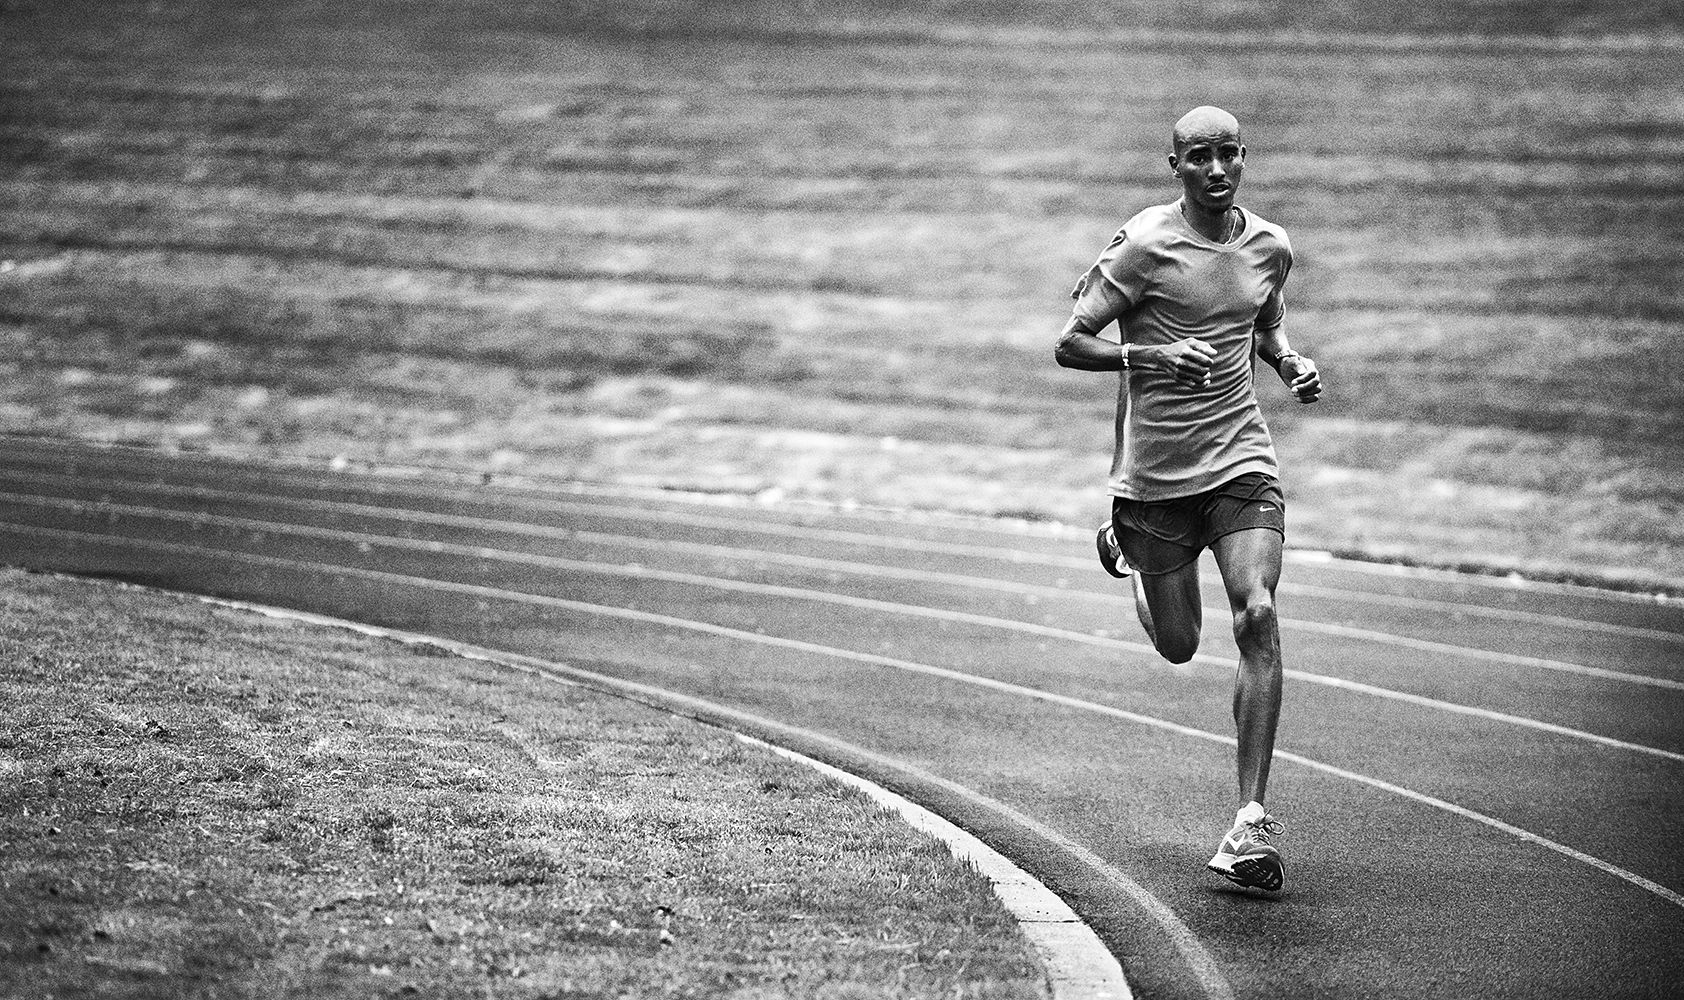 Carlos Serrao. Mo farah, Mo farah training, Urban running